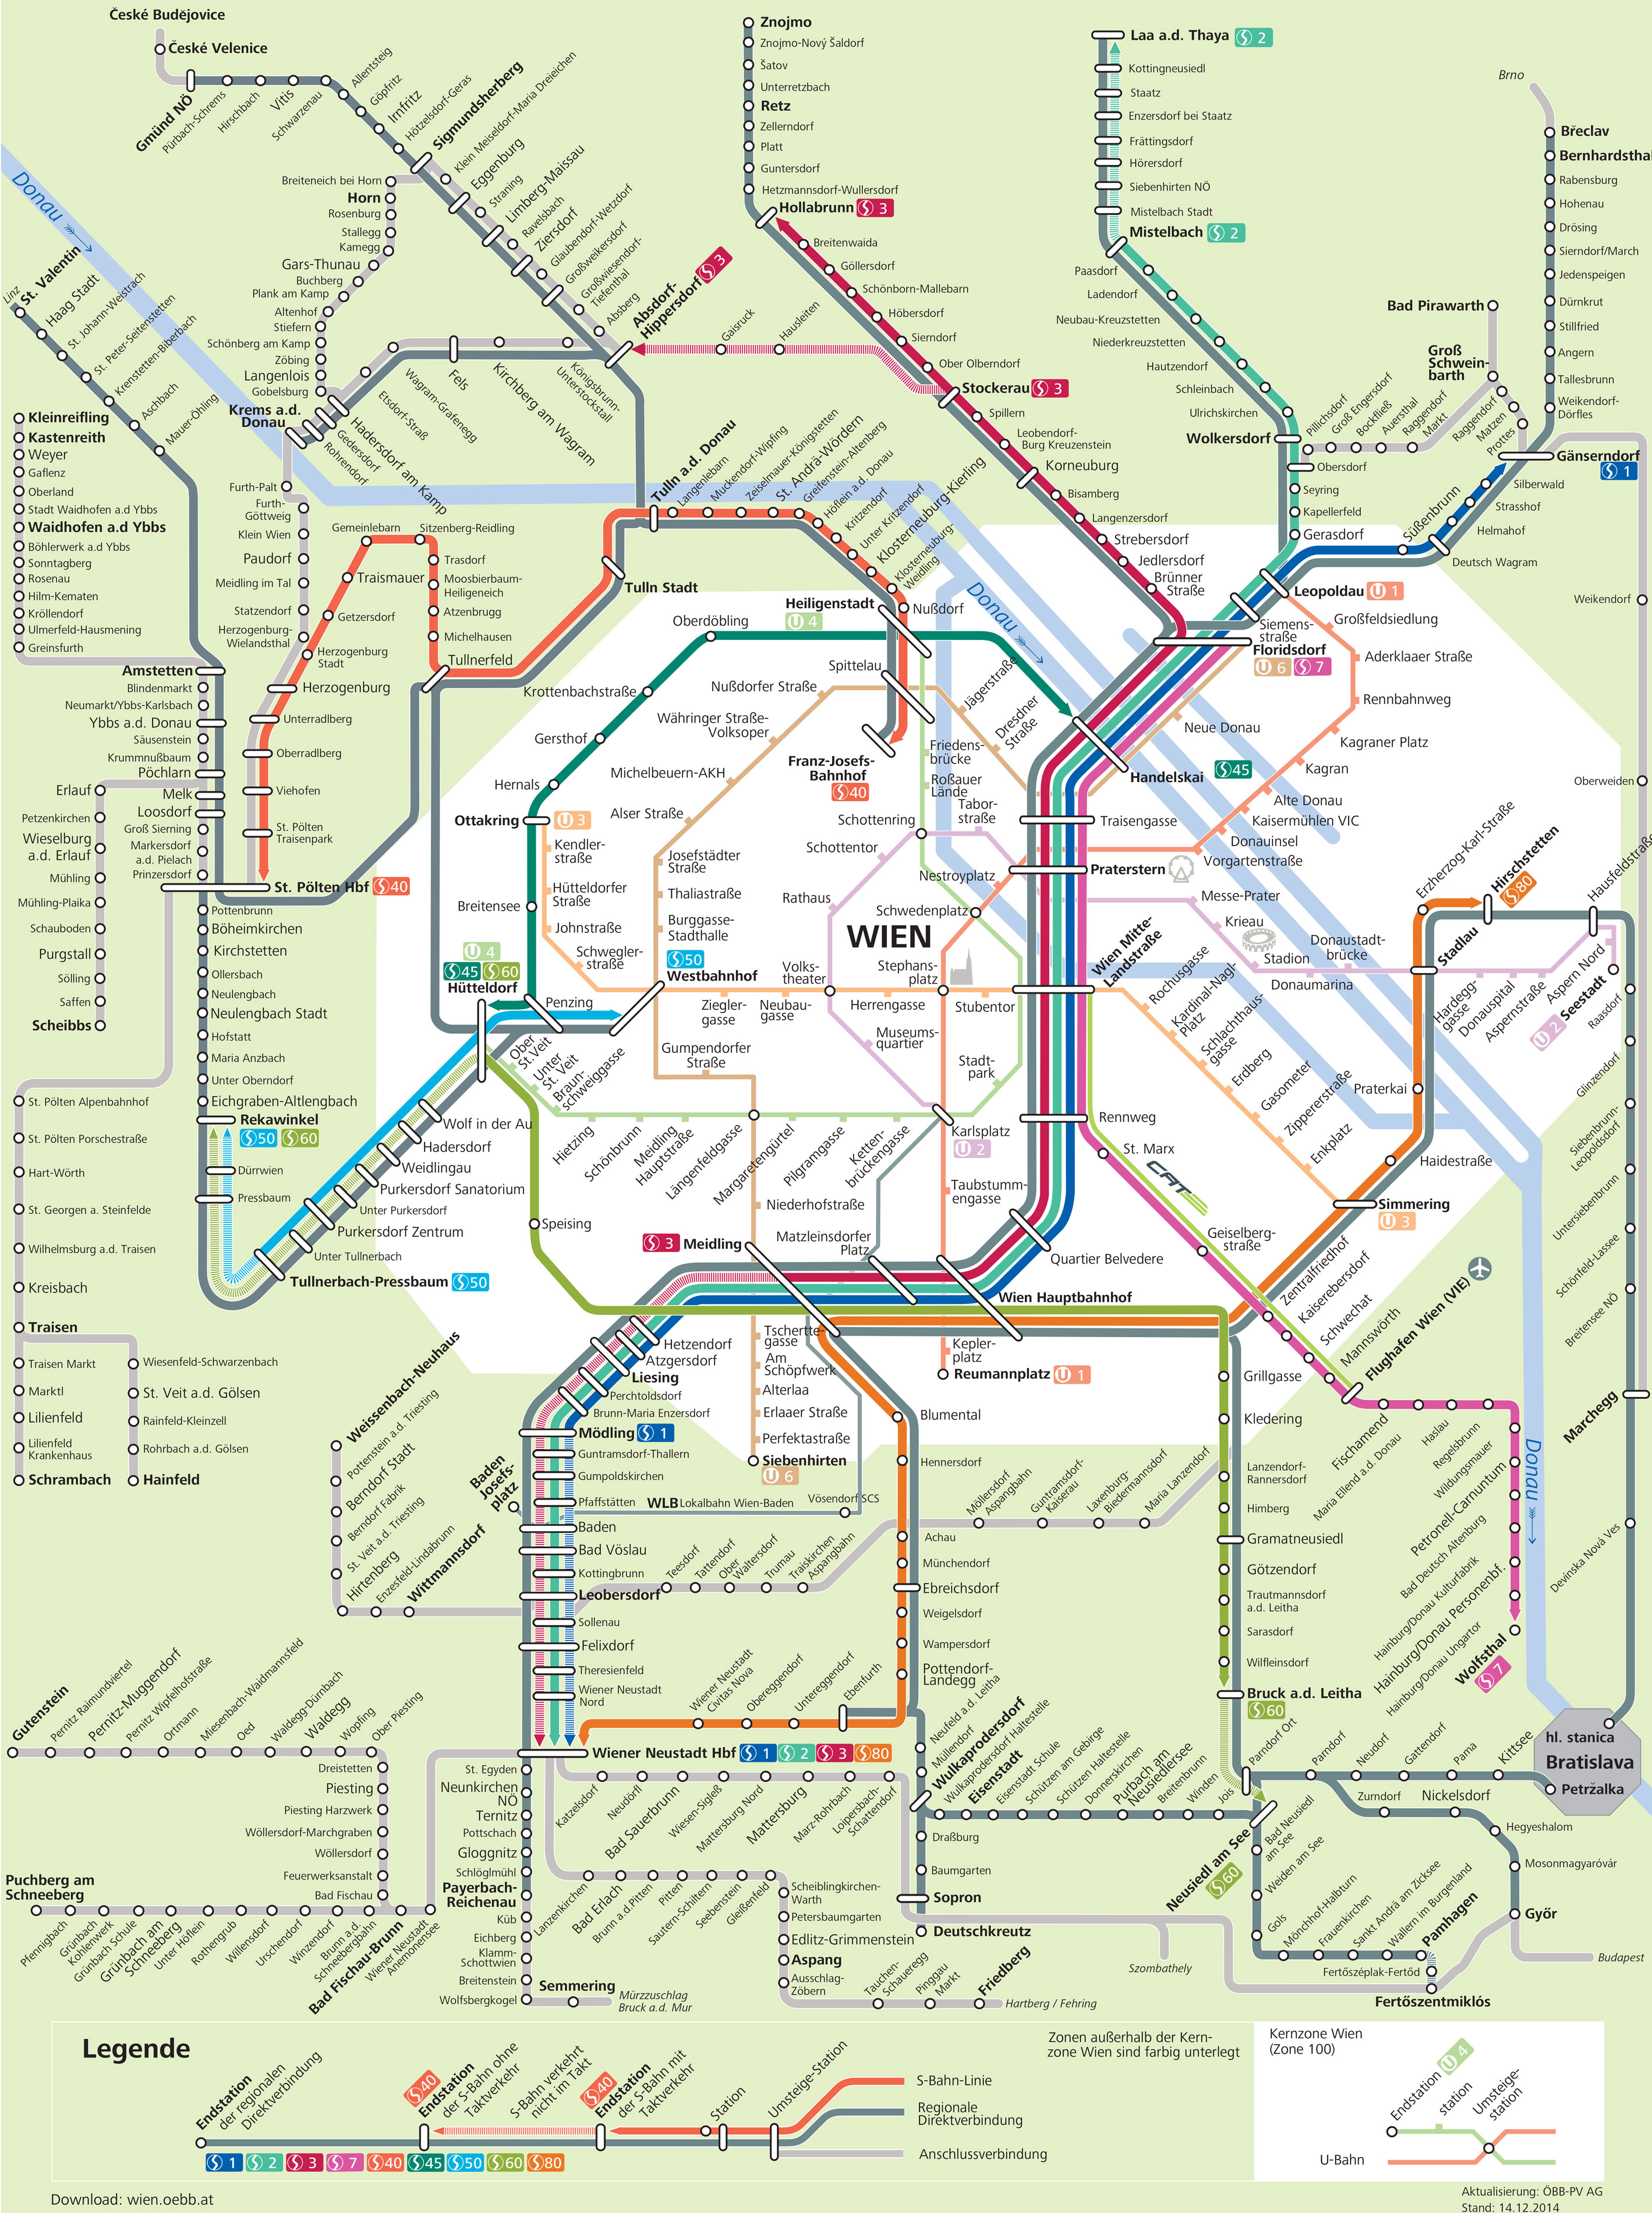 Plan et carte du train urbain (s bahn) de Vienne